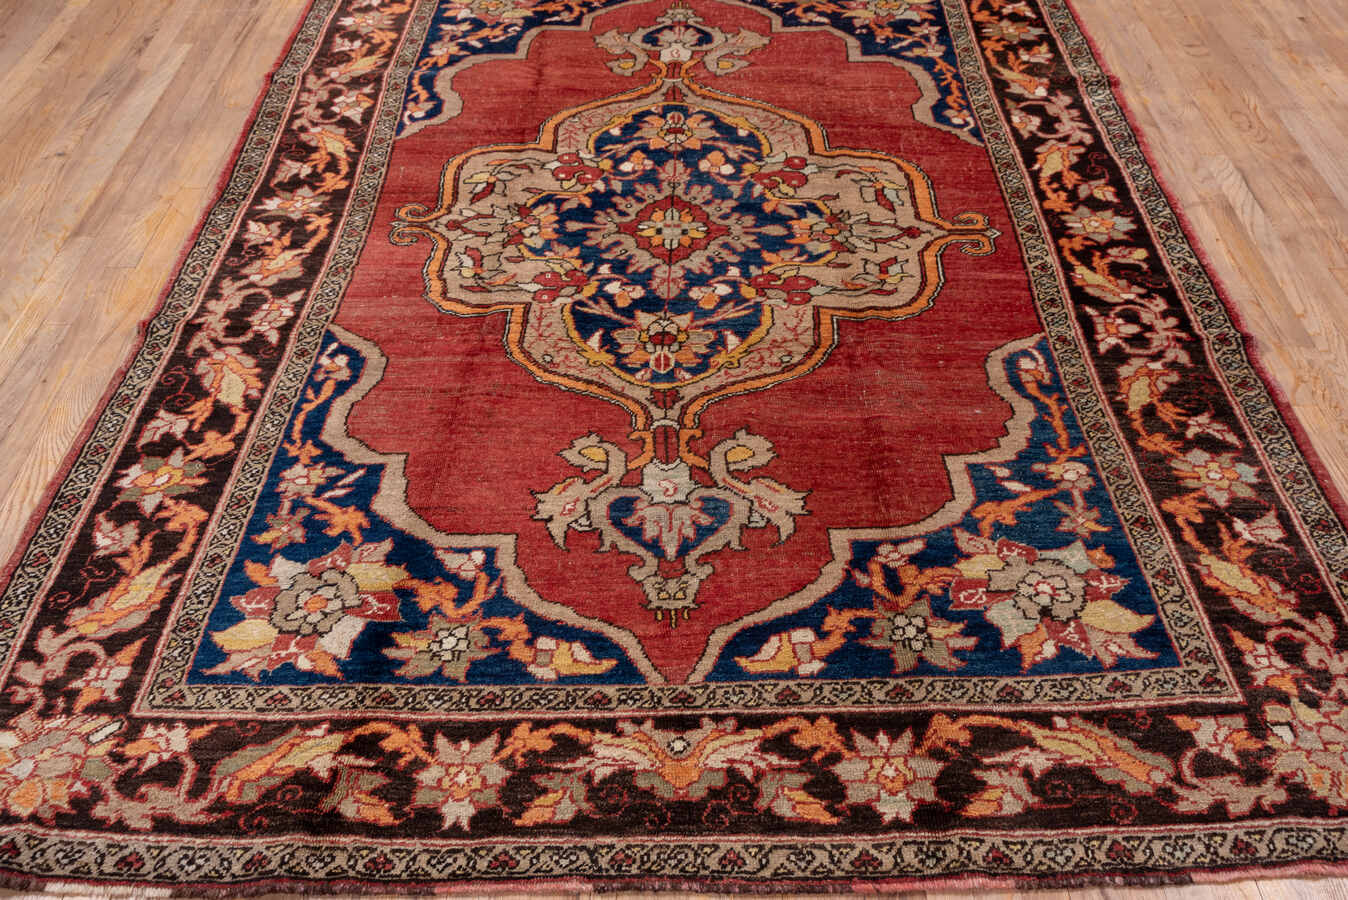 Antique oushak Carpet - # 56747